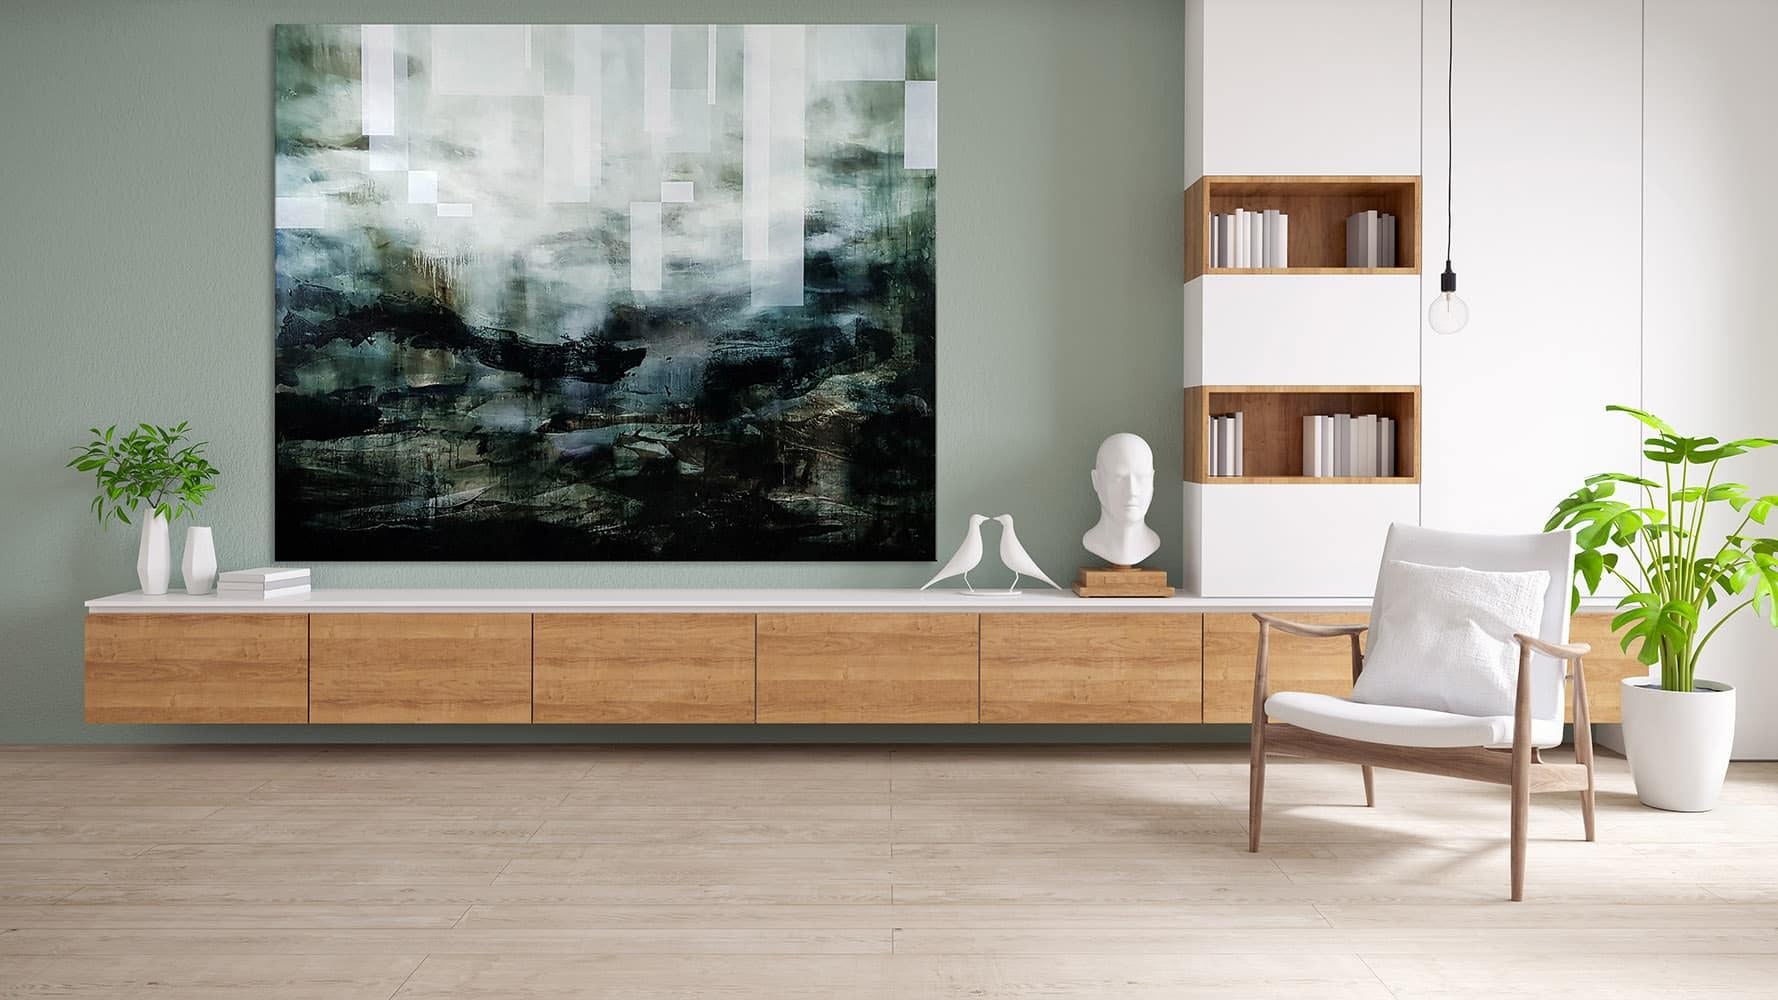 Eternal Return II by Joachim van der Vlugt - Semi-abstract painting, green, sky For Sale 1